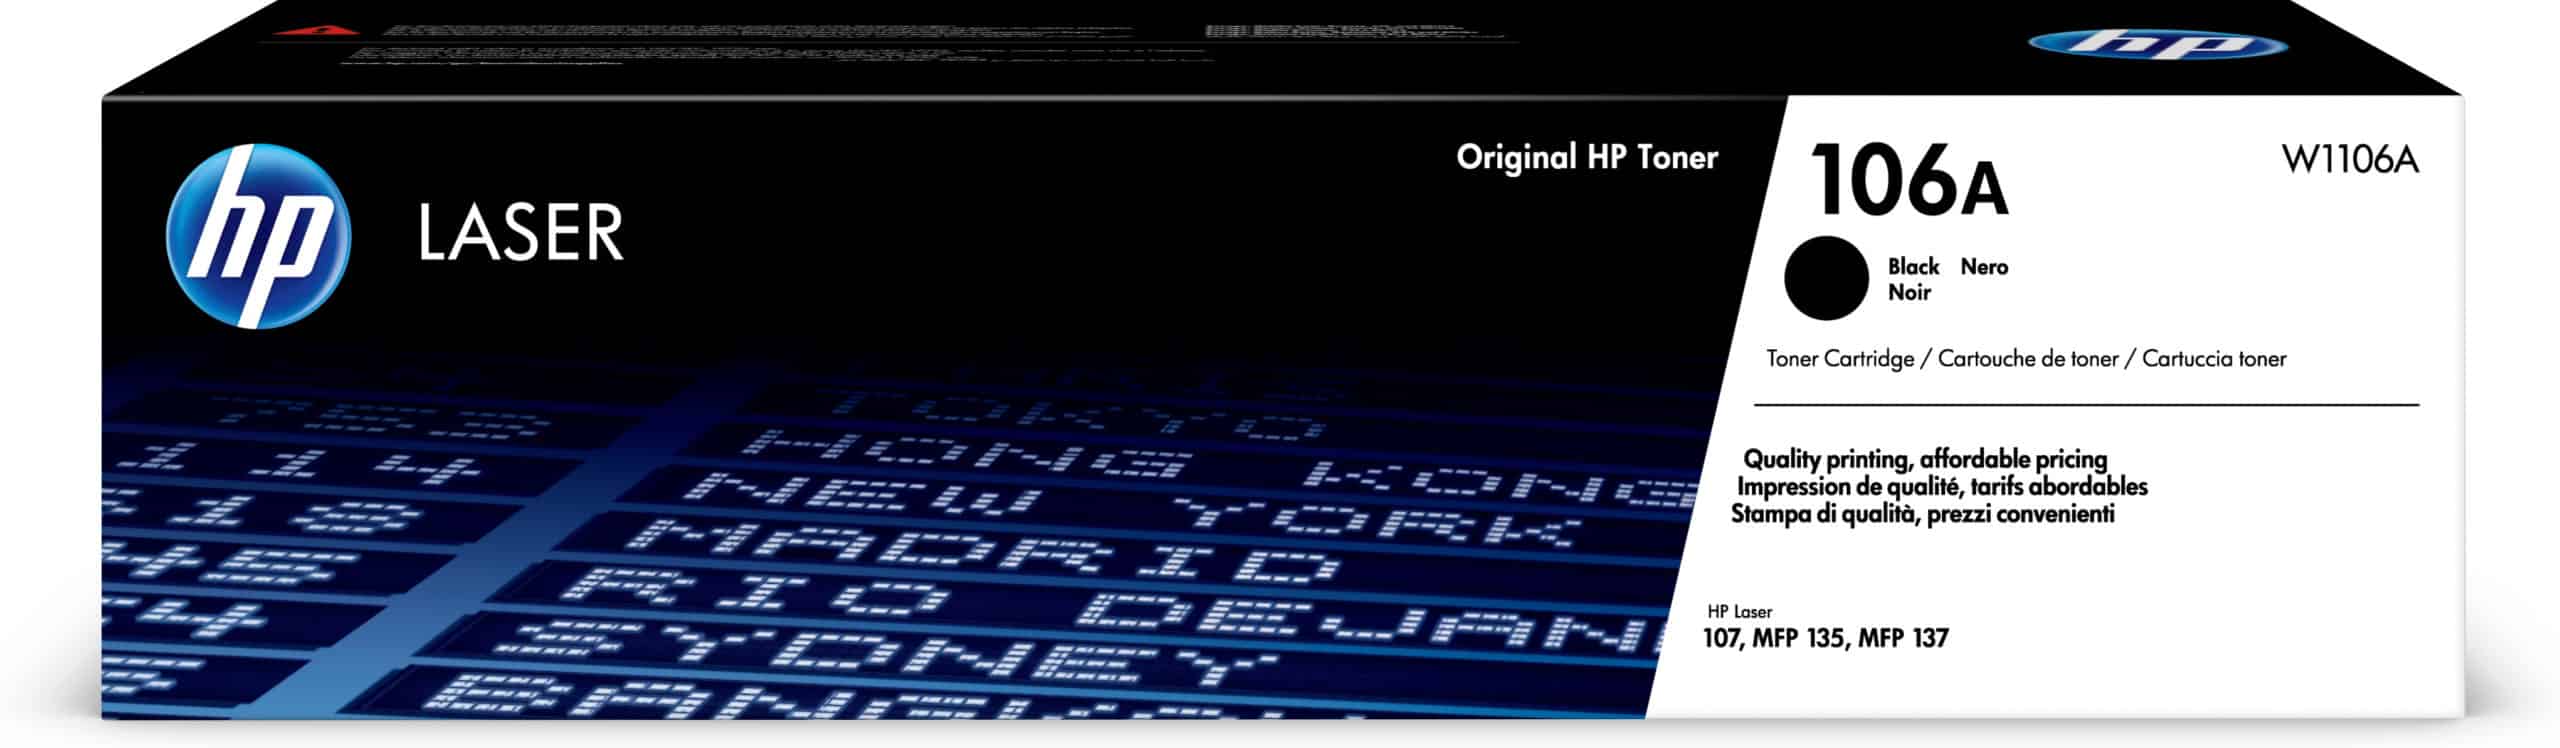 Impresora Multifuncional HP Laser 137fnw Monocromática